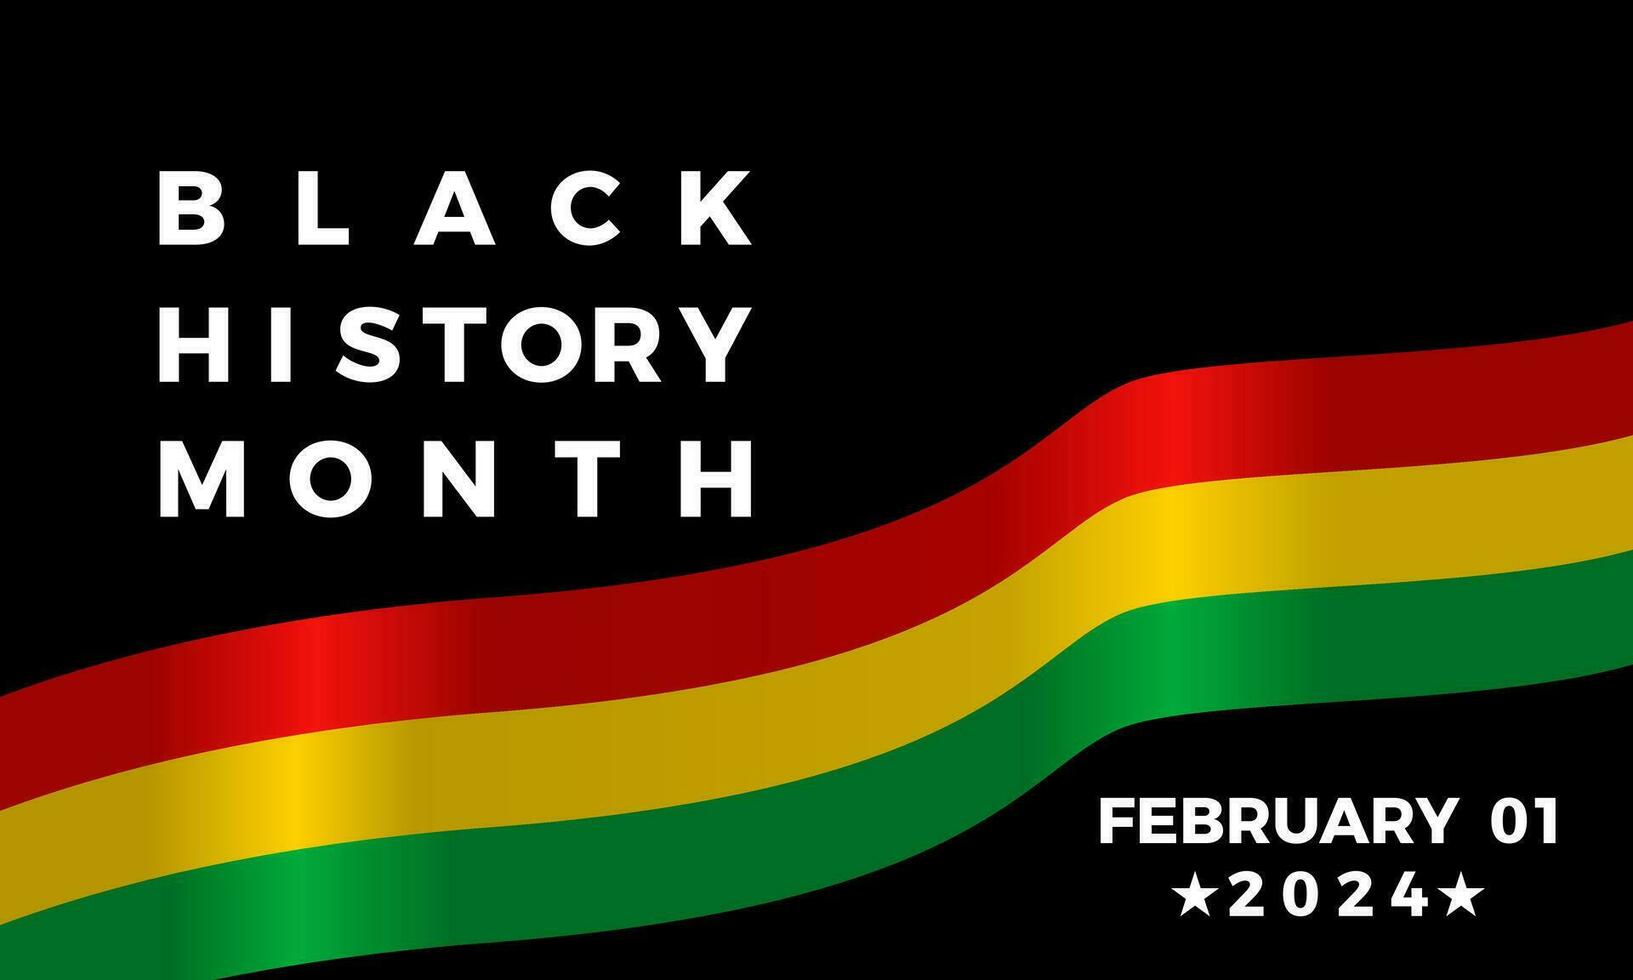 schwarz Geschichte Monat zelebrieren. afrikanisch amerikanisch Geschichte. gefeiert jährlich im Februar. Schwarz, Rot, Gelb, Grün Farbe Banner Hintergrund. vektor